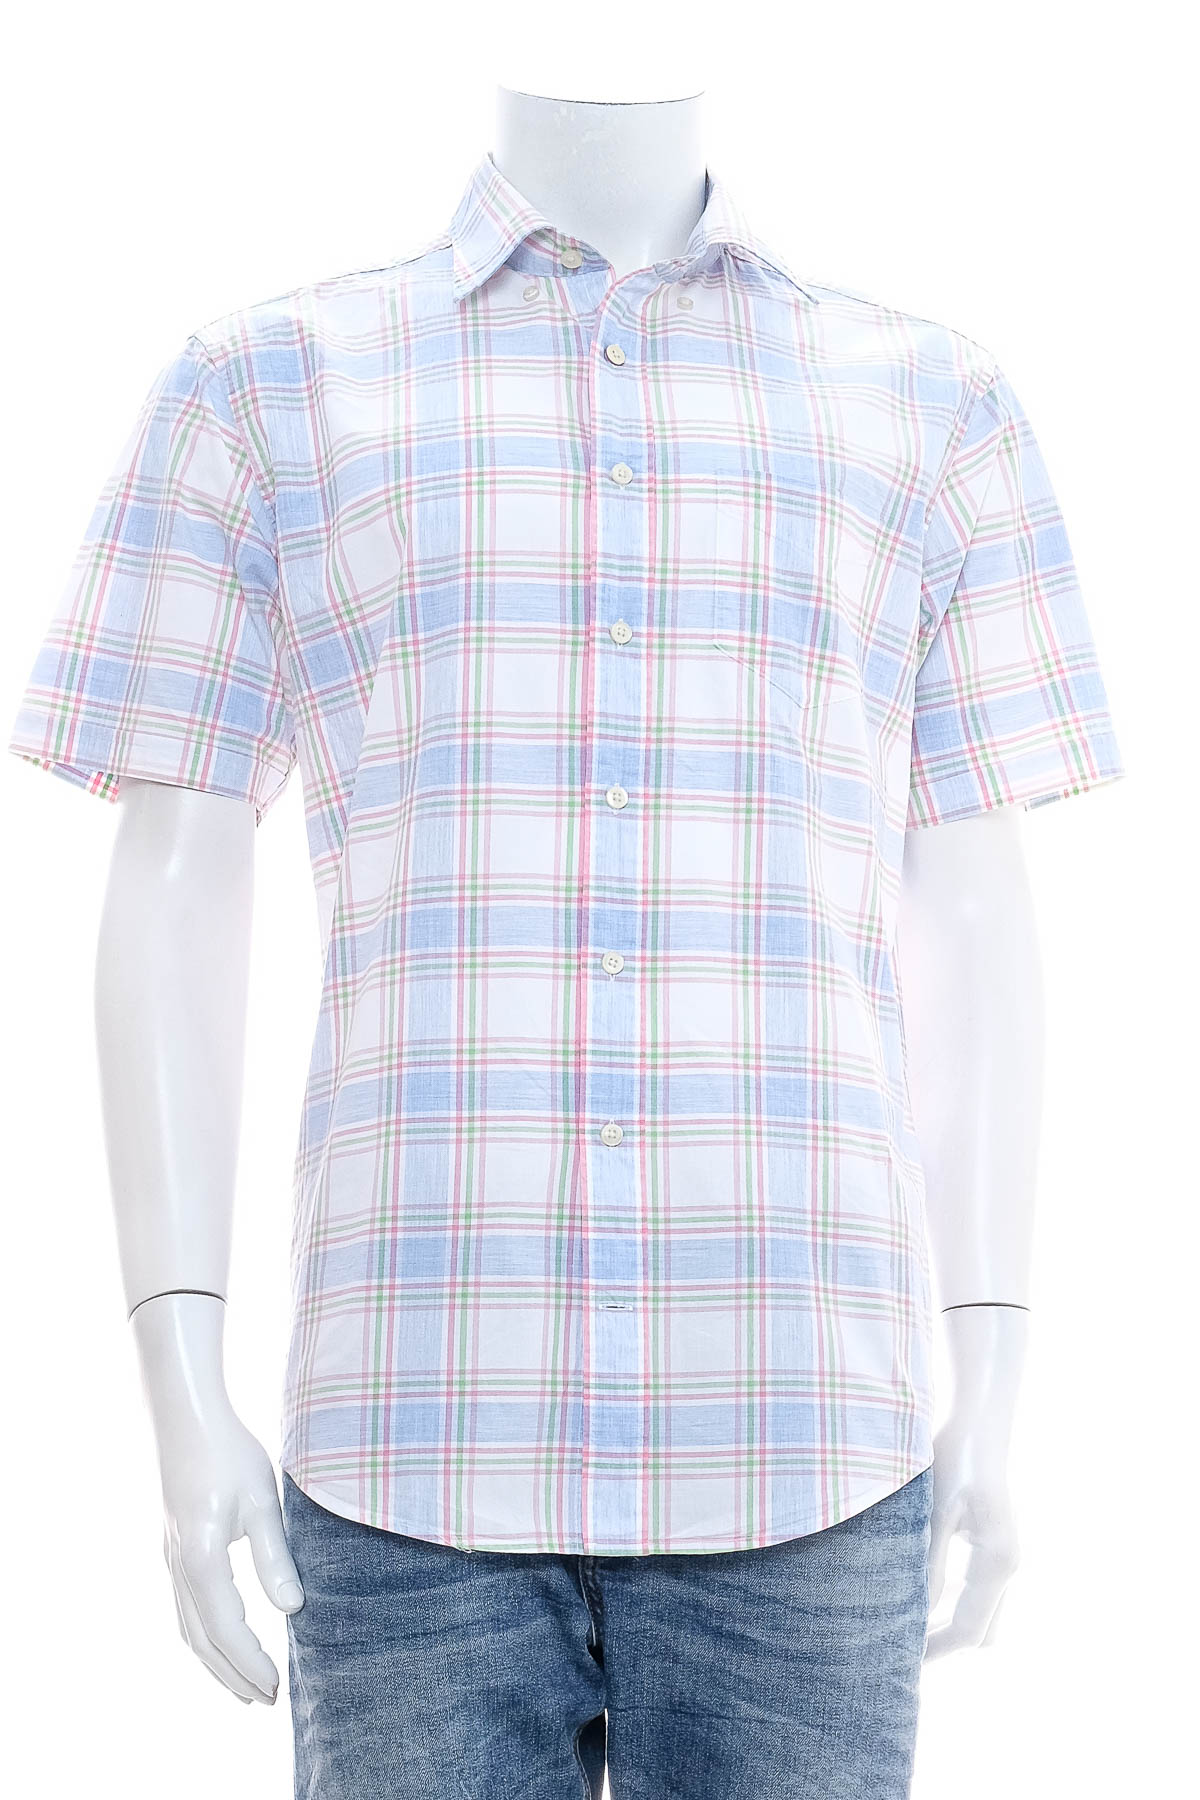 Men's shirt - Gant - 0